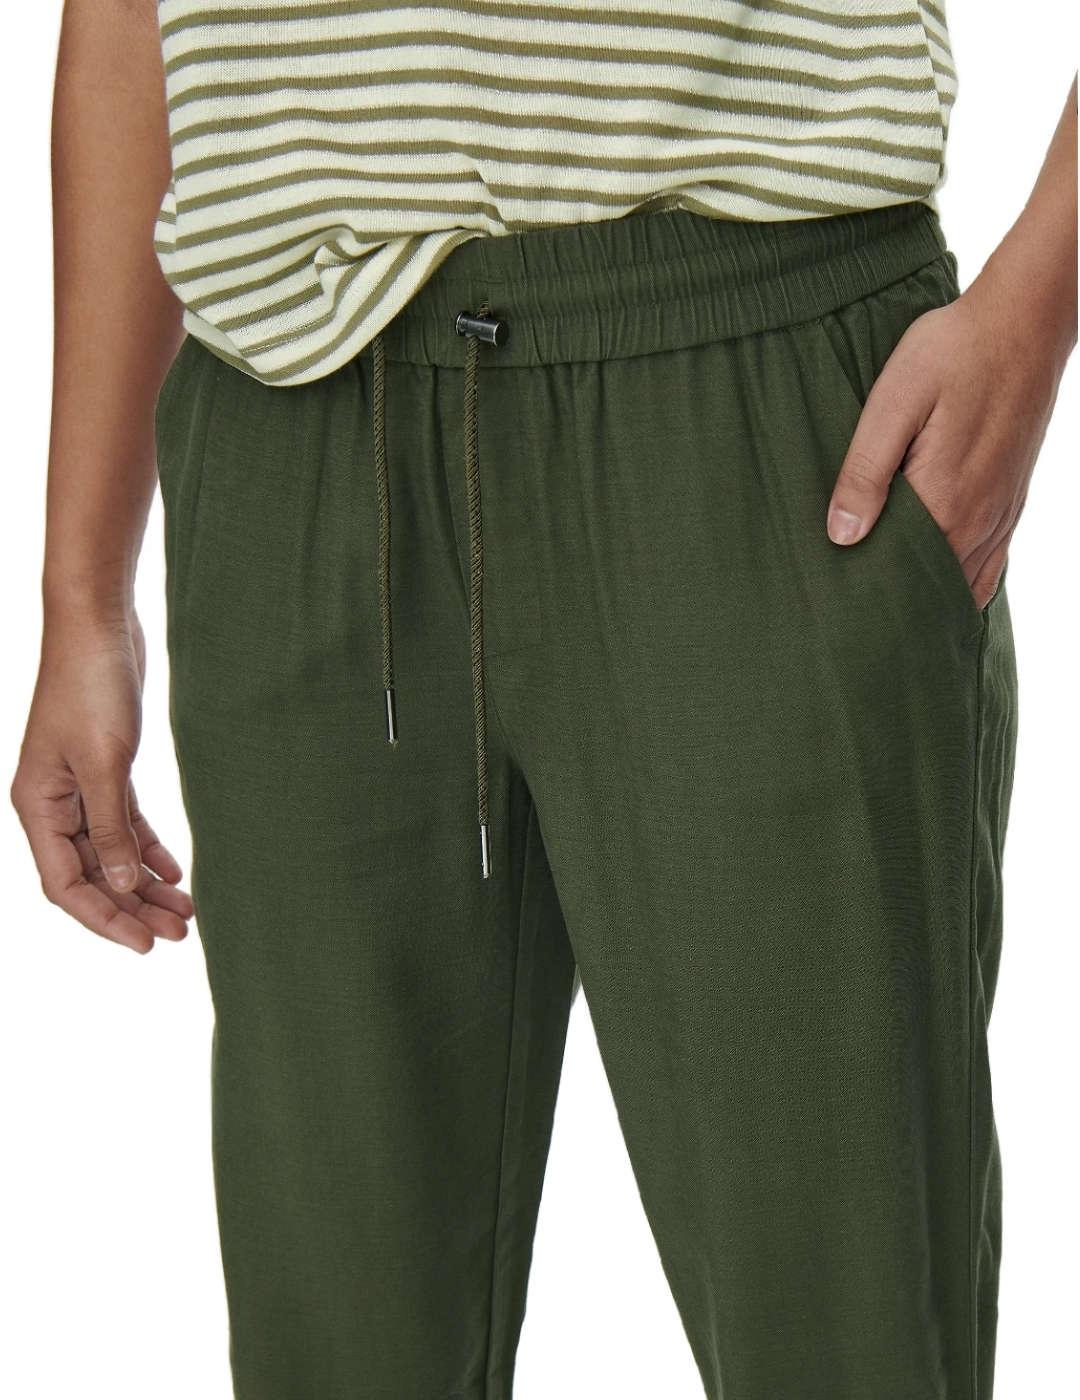 Pantalón Only Kelda jogger verde slim puños elásticos mujer